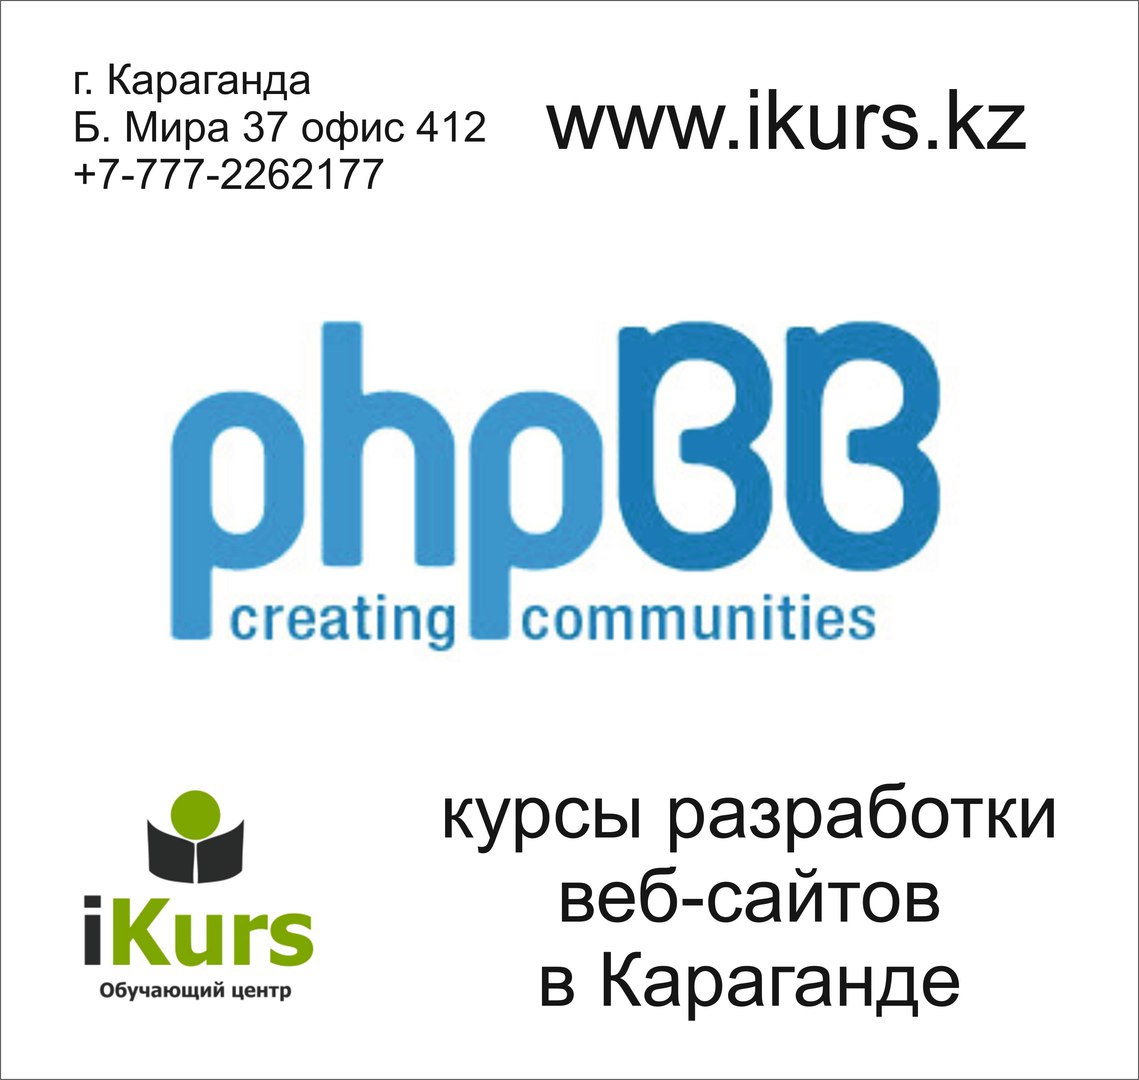 Курсы по созданию форума на движке phpBB в Караганде. Курсы разработки веб-сайтов в обучающем центре Ikurs